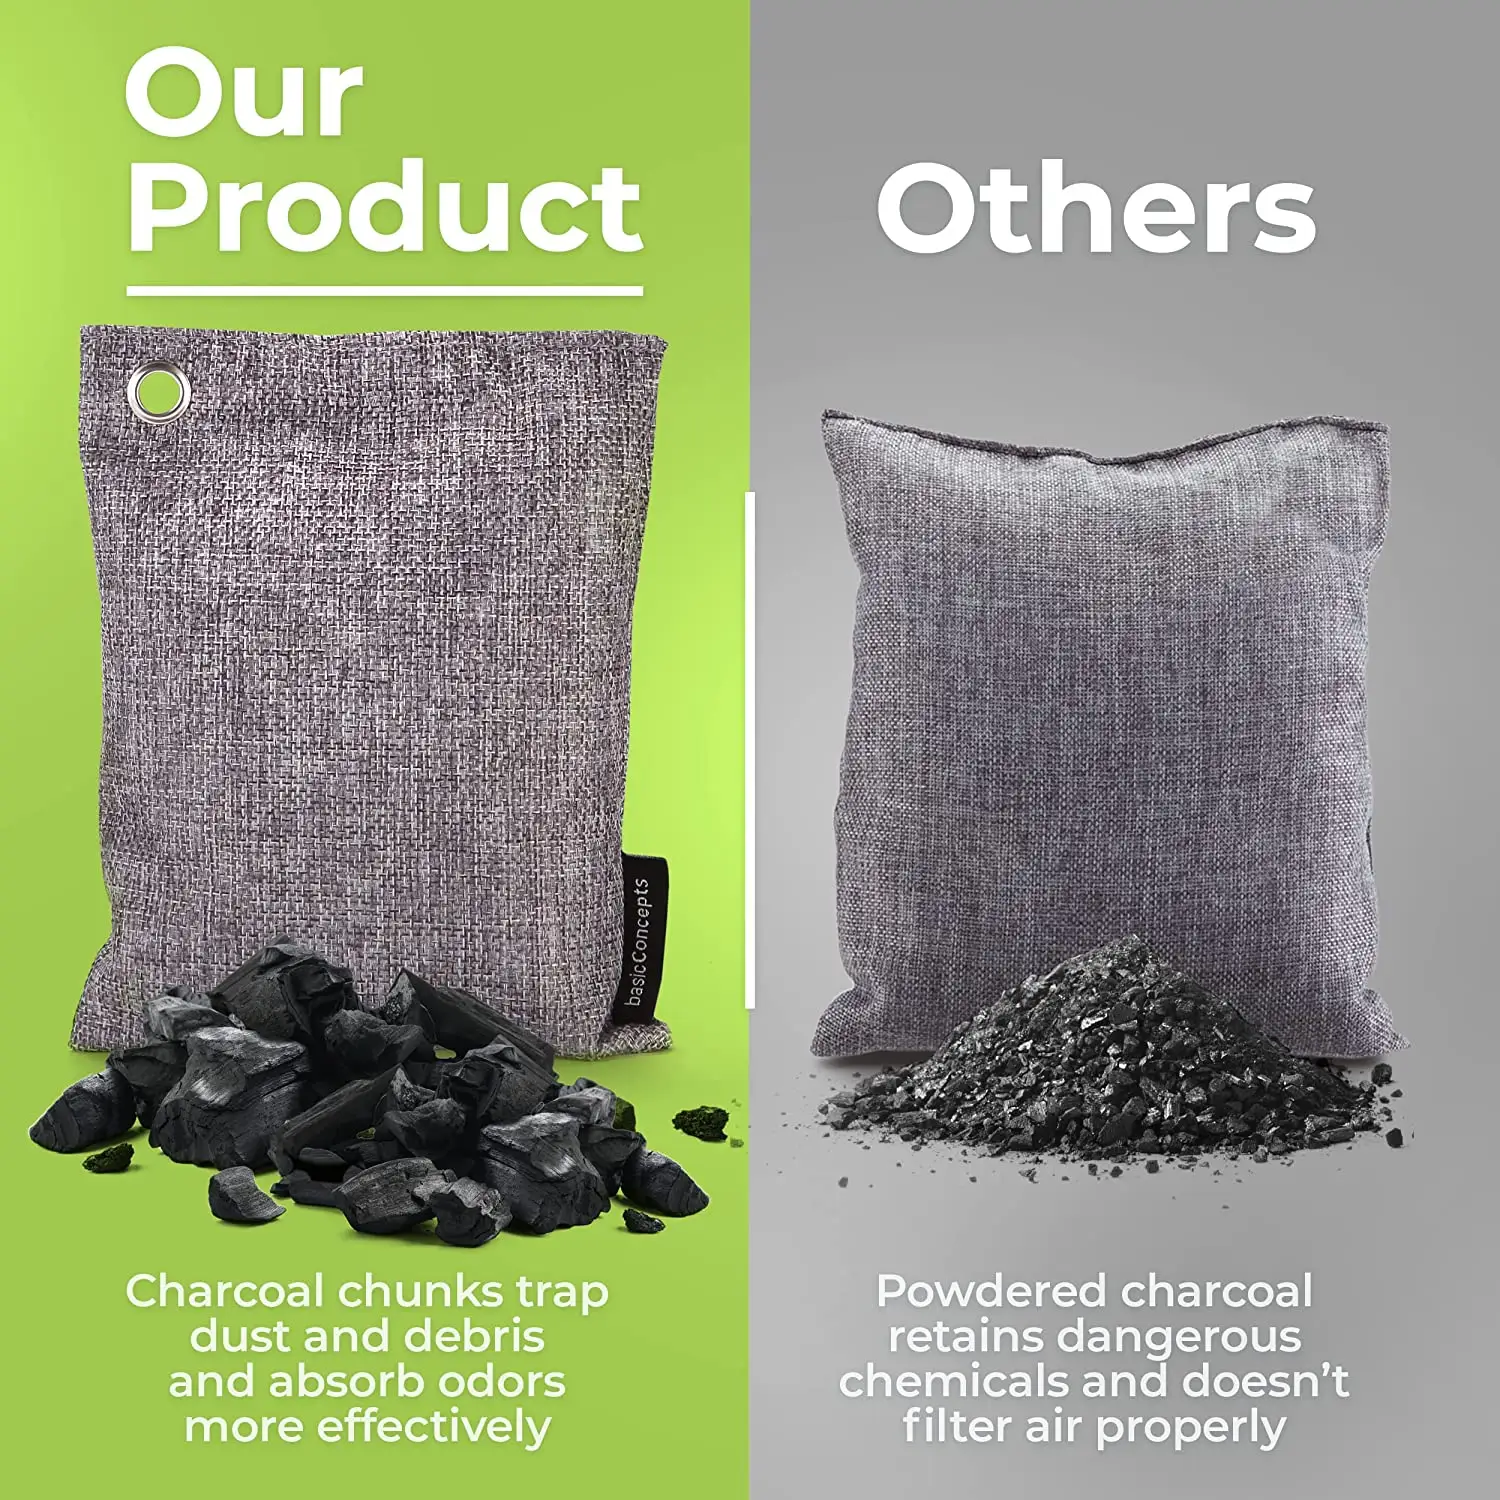 Sacos purificadores de ar a carvão, absorvedor natural ativado para odores domésticos, desodorizador, ambientador de sapatos, fotocatalisador